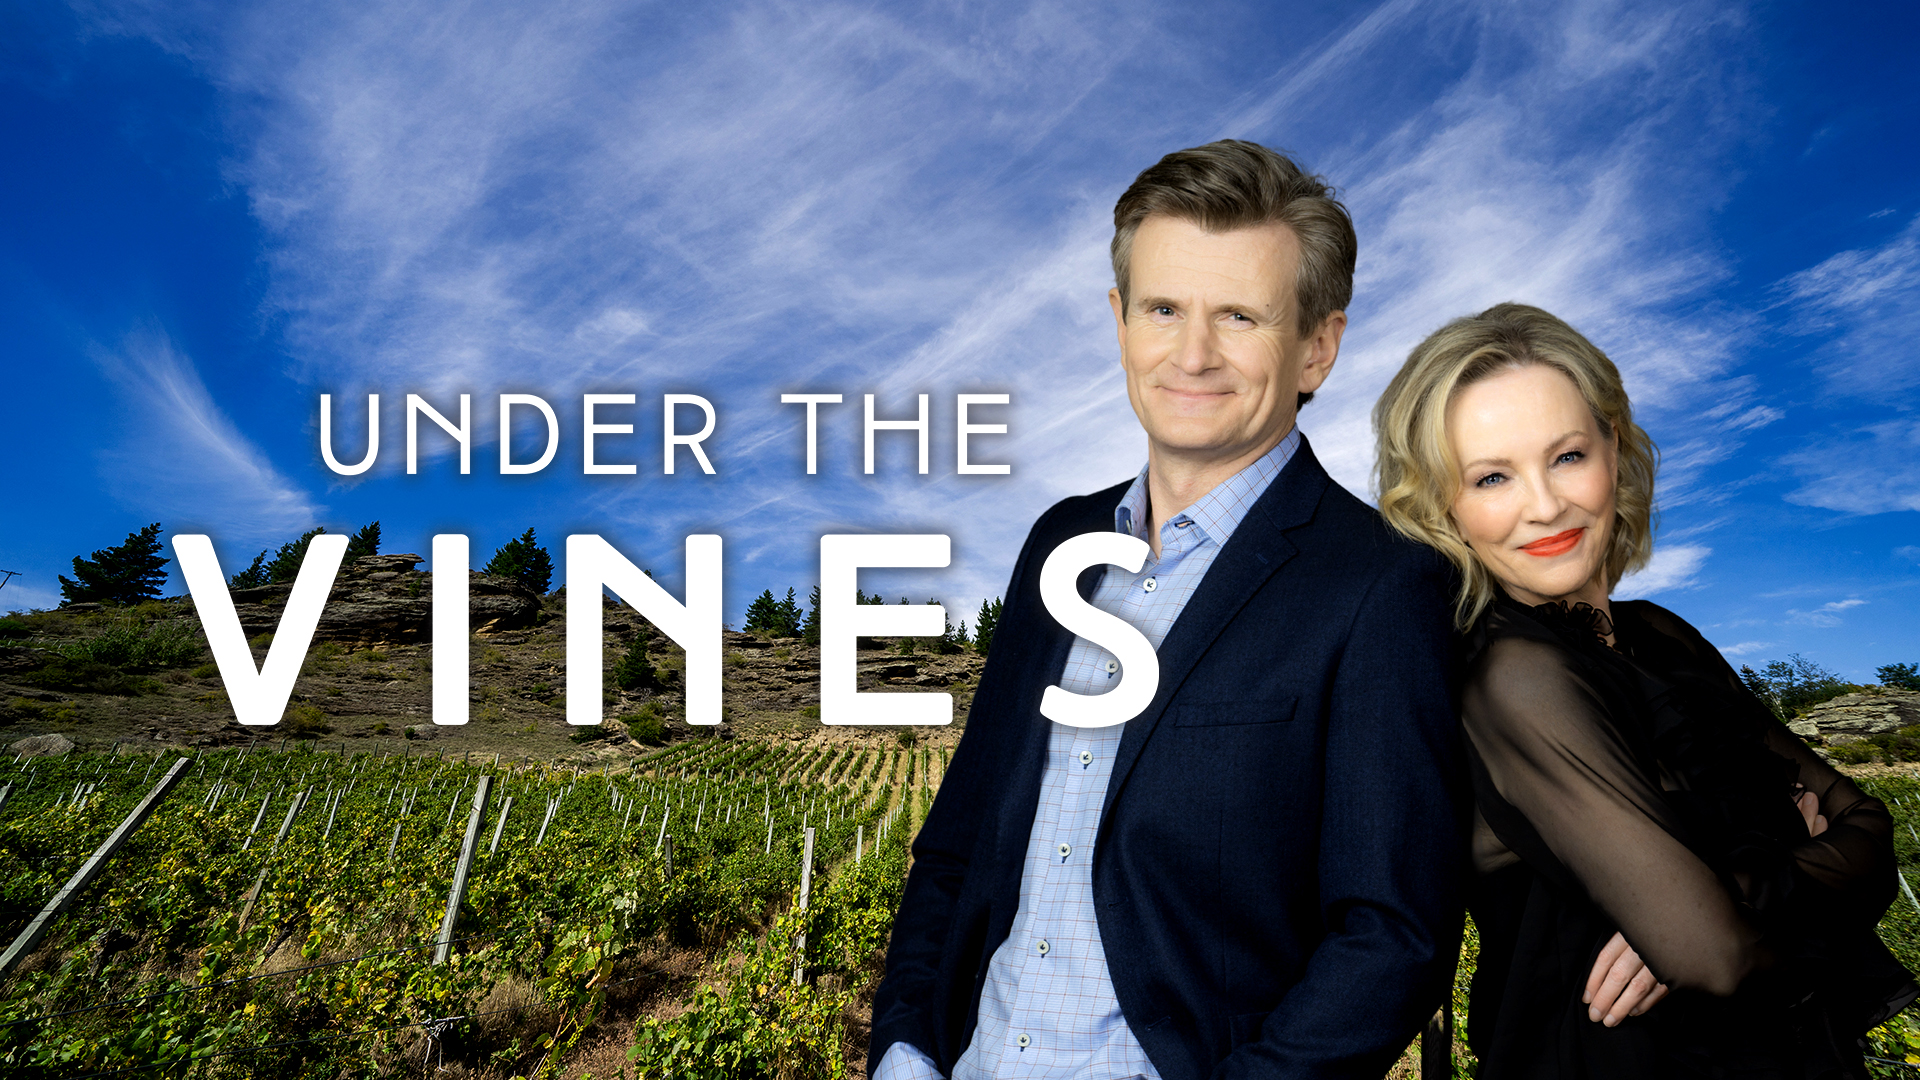 The Vineyard Series Shop — The Vineyard Series